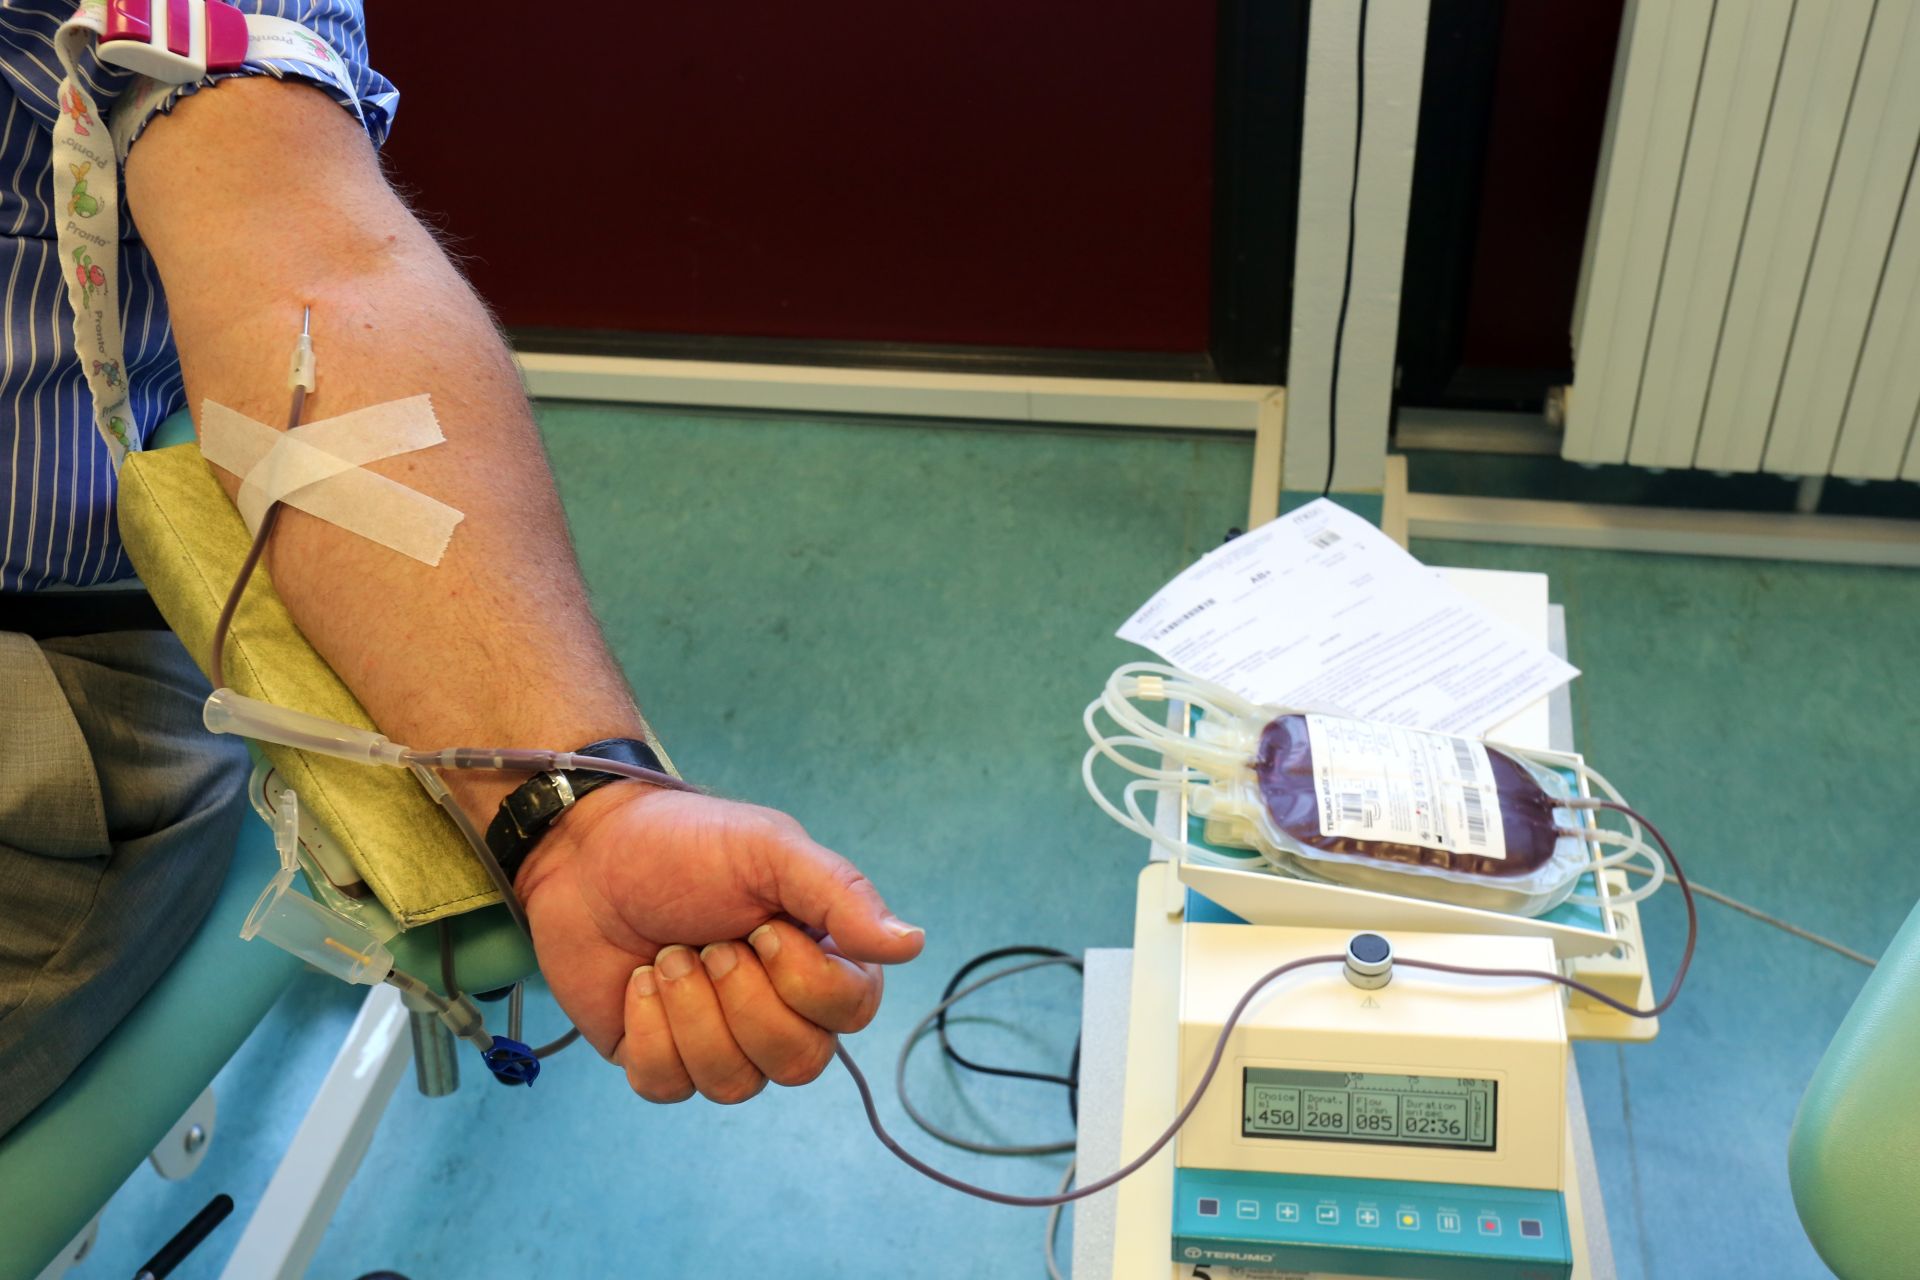 05.07.2016., Rijeka - Gradonacelnik Vojko Obersnel daruje krv na odjelu za transfuziju KBC-a Rijeka.
Photo: Goran Kovacic/PIXSELL